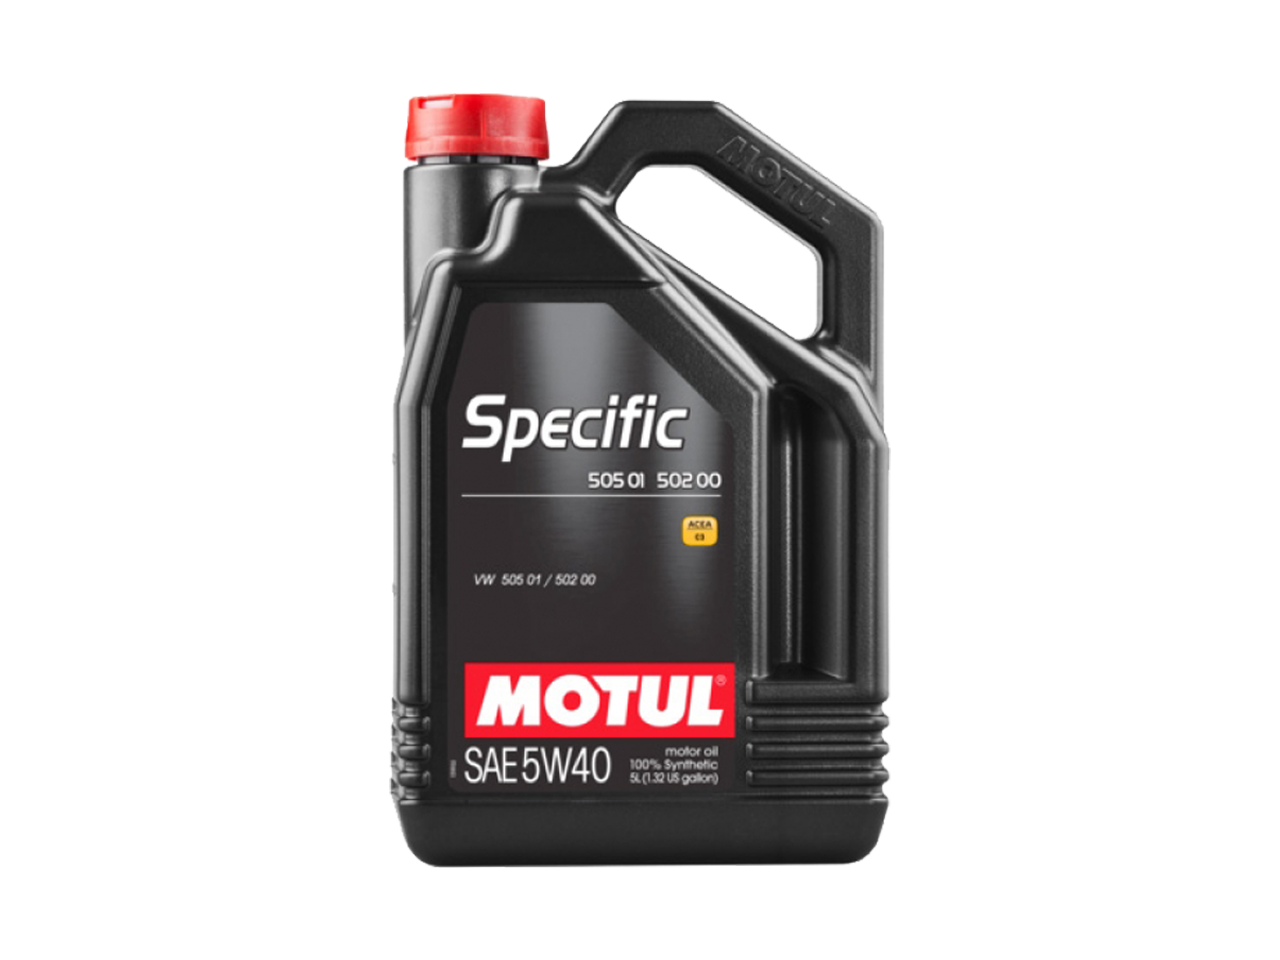 Купить недорого Моторное масло Motul SPECIFIC 502 00 / 505 00 / 505 01 в Москве